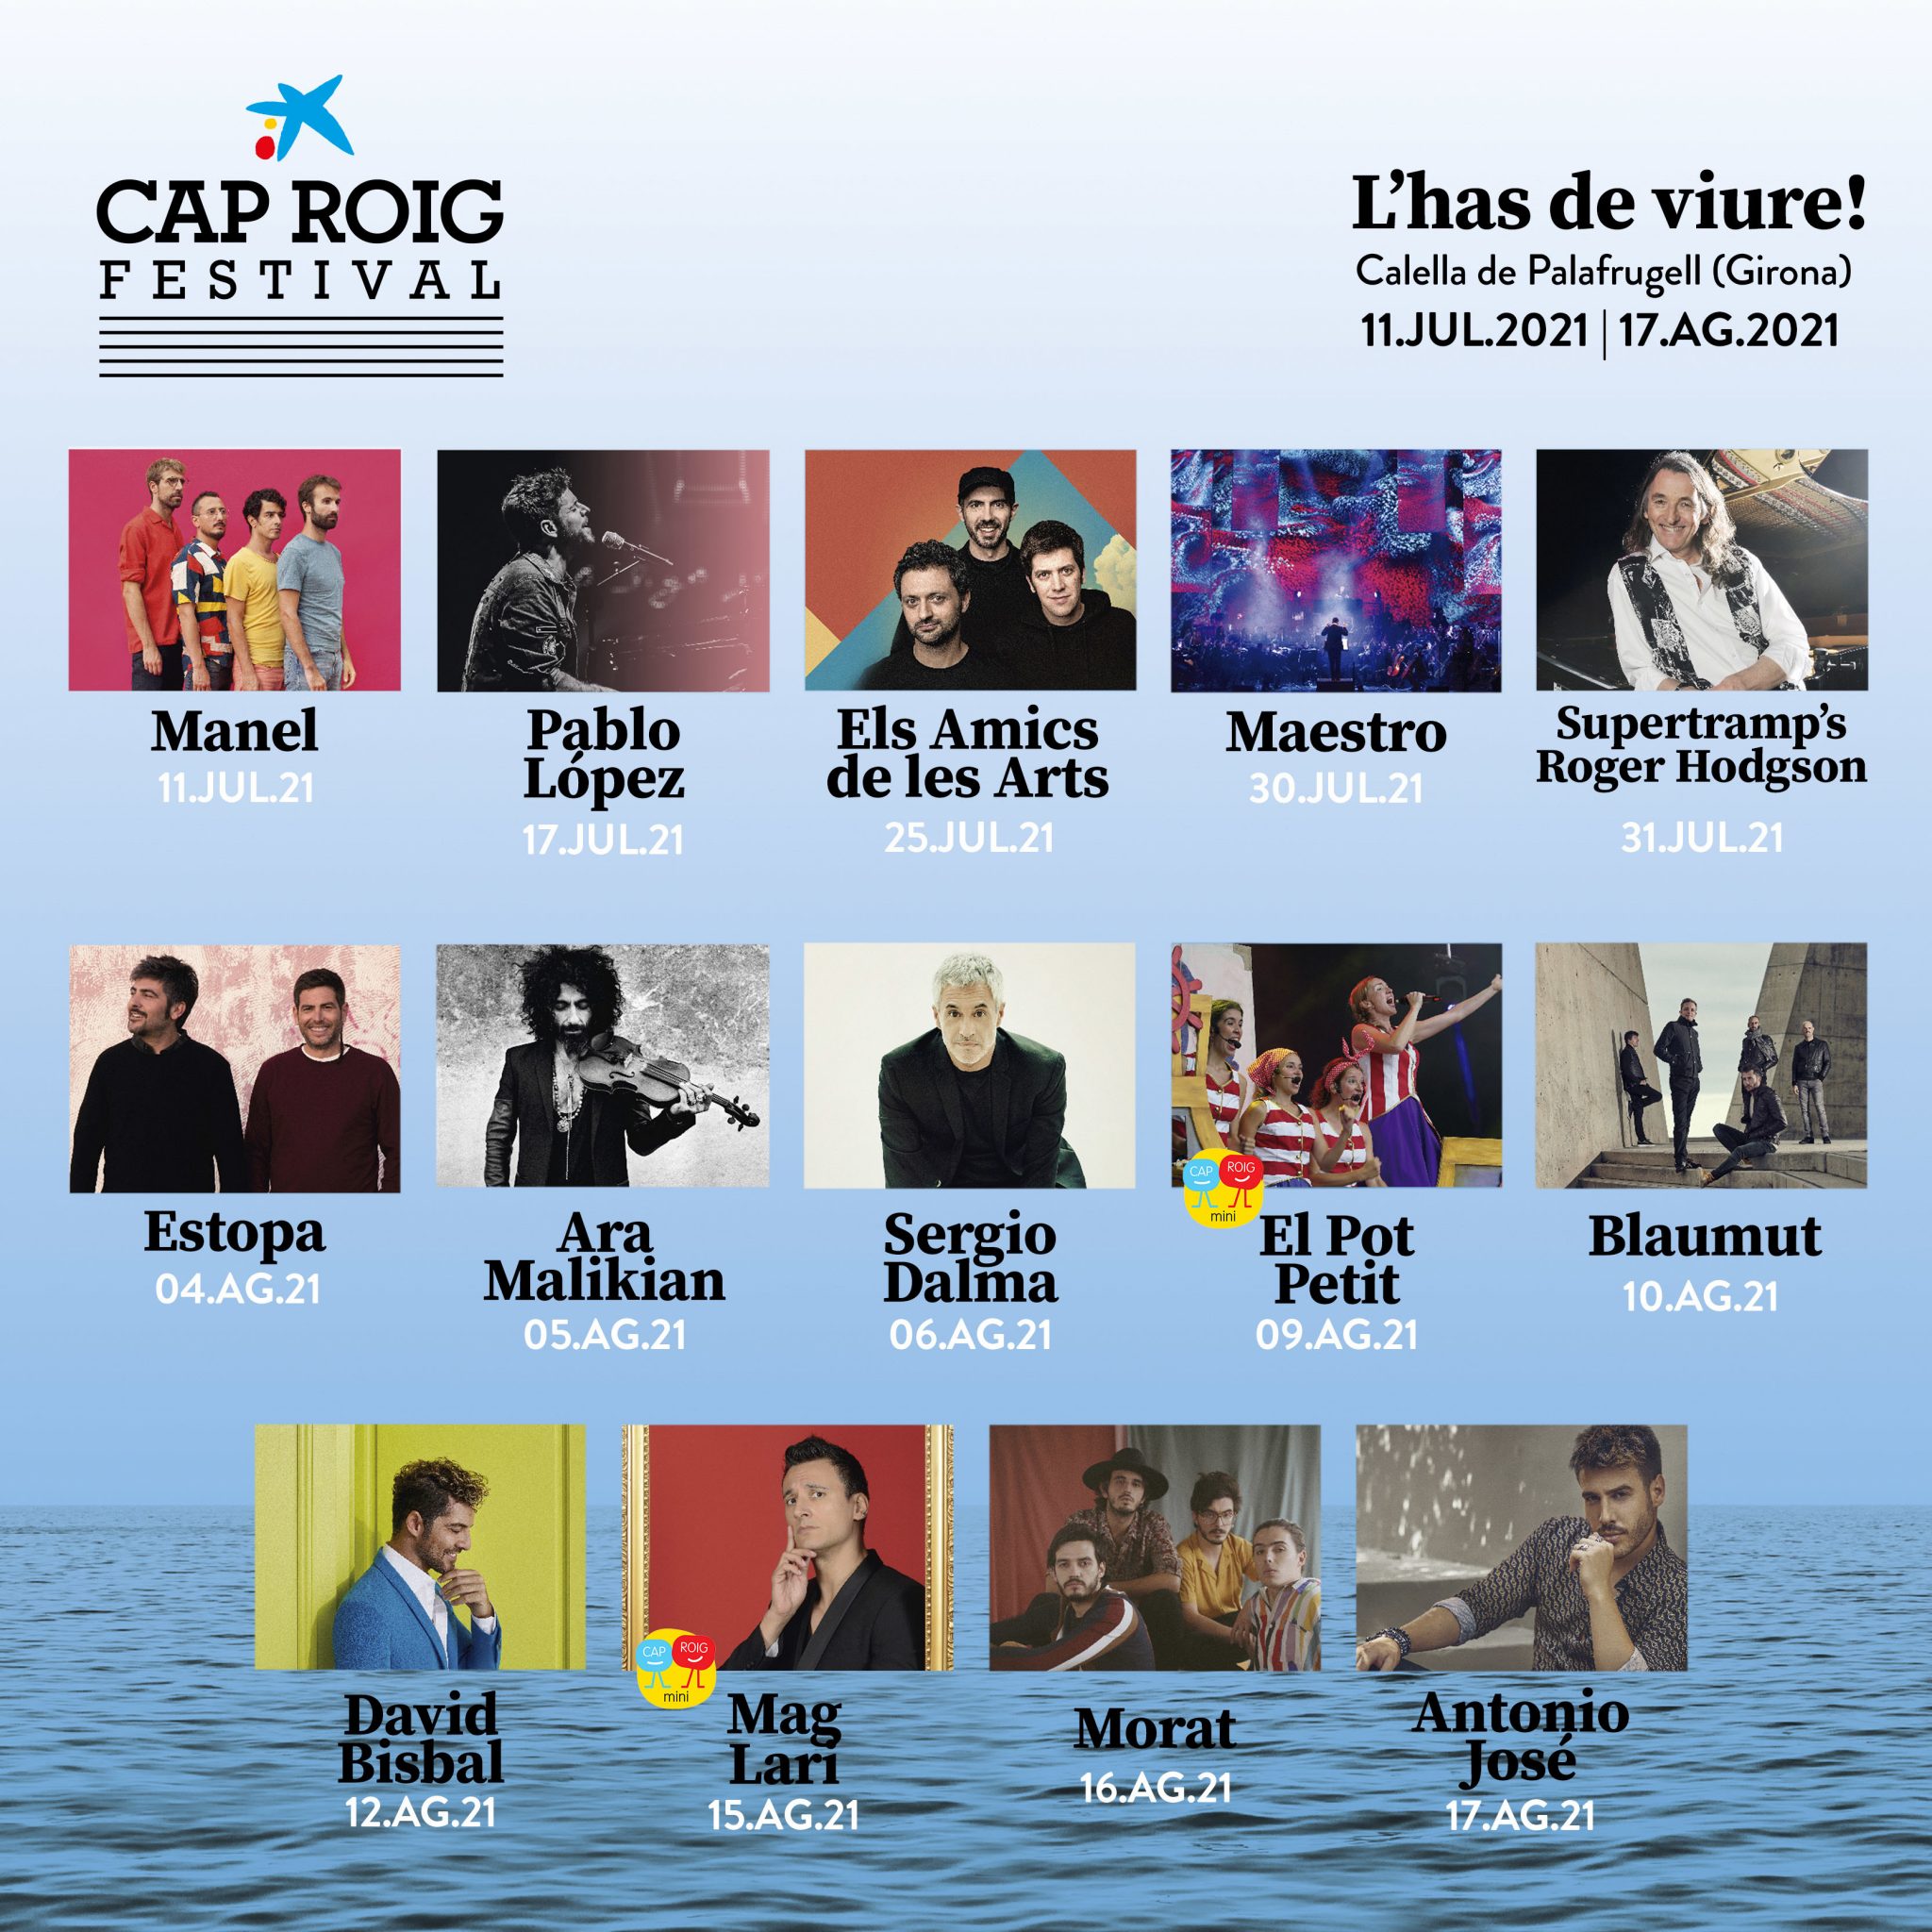 Festival de Cap Roig pospone la Edición 2020 y primeros conciertos de 2021